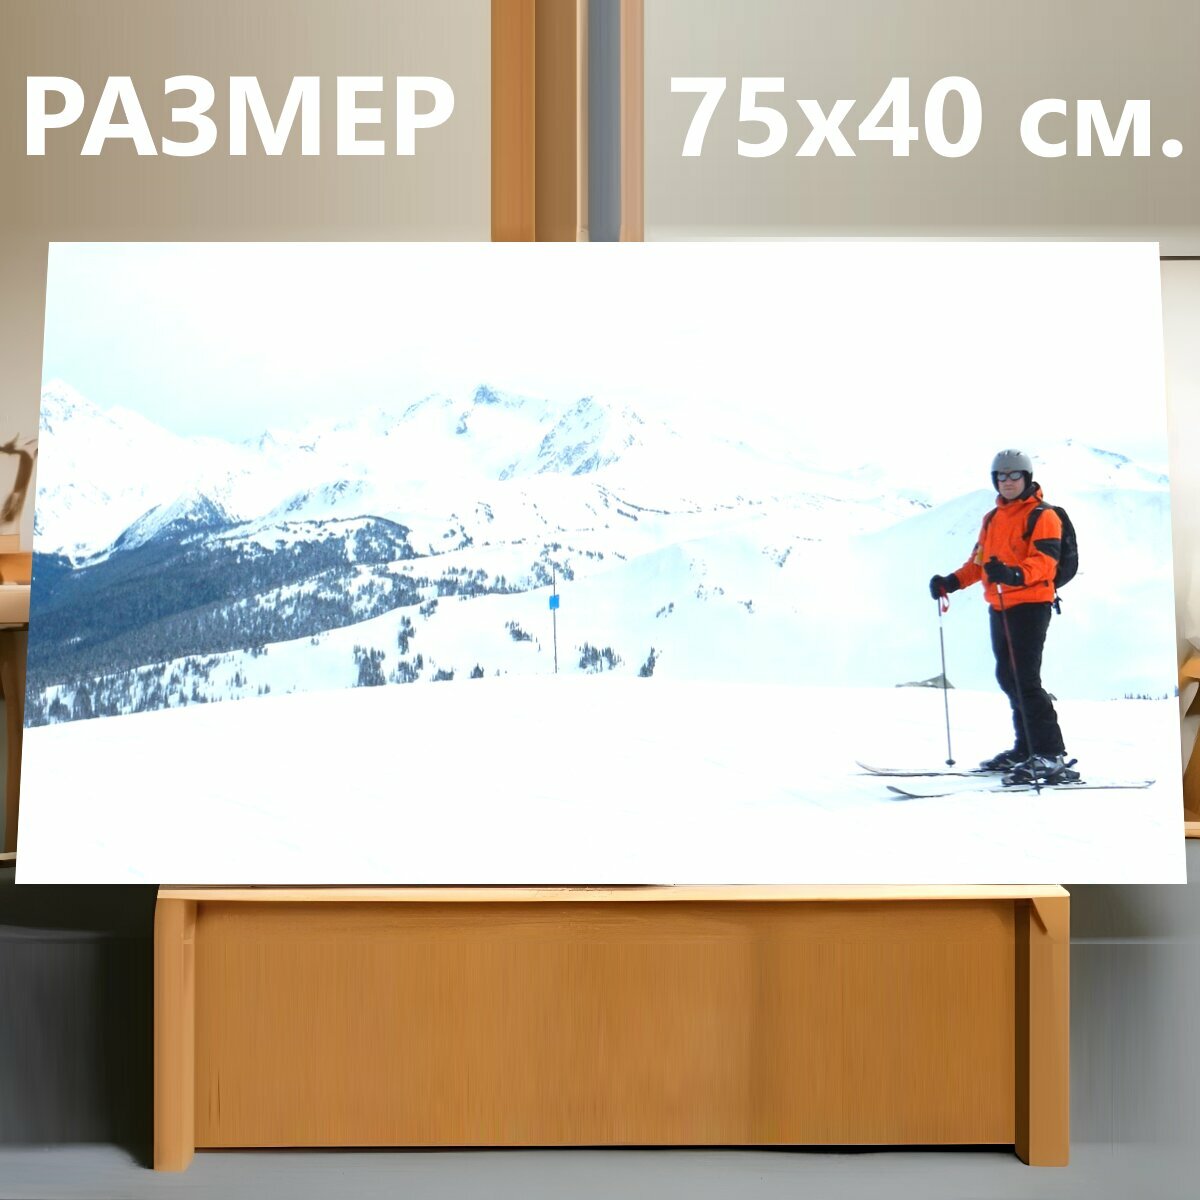 Картина на холсте "Горные лыжи, зимние виды спорта, свистун" на подрамнике 75х40 см. для интерьера